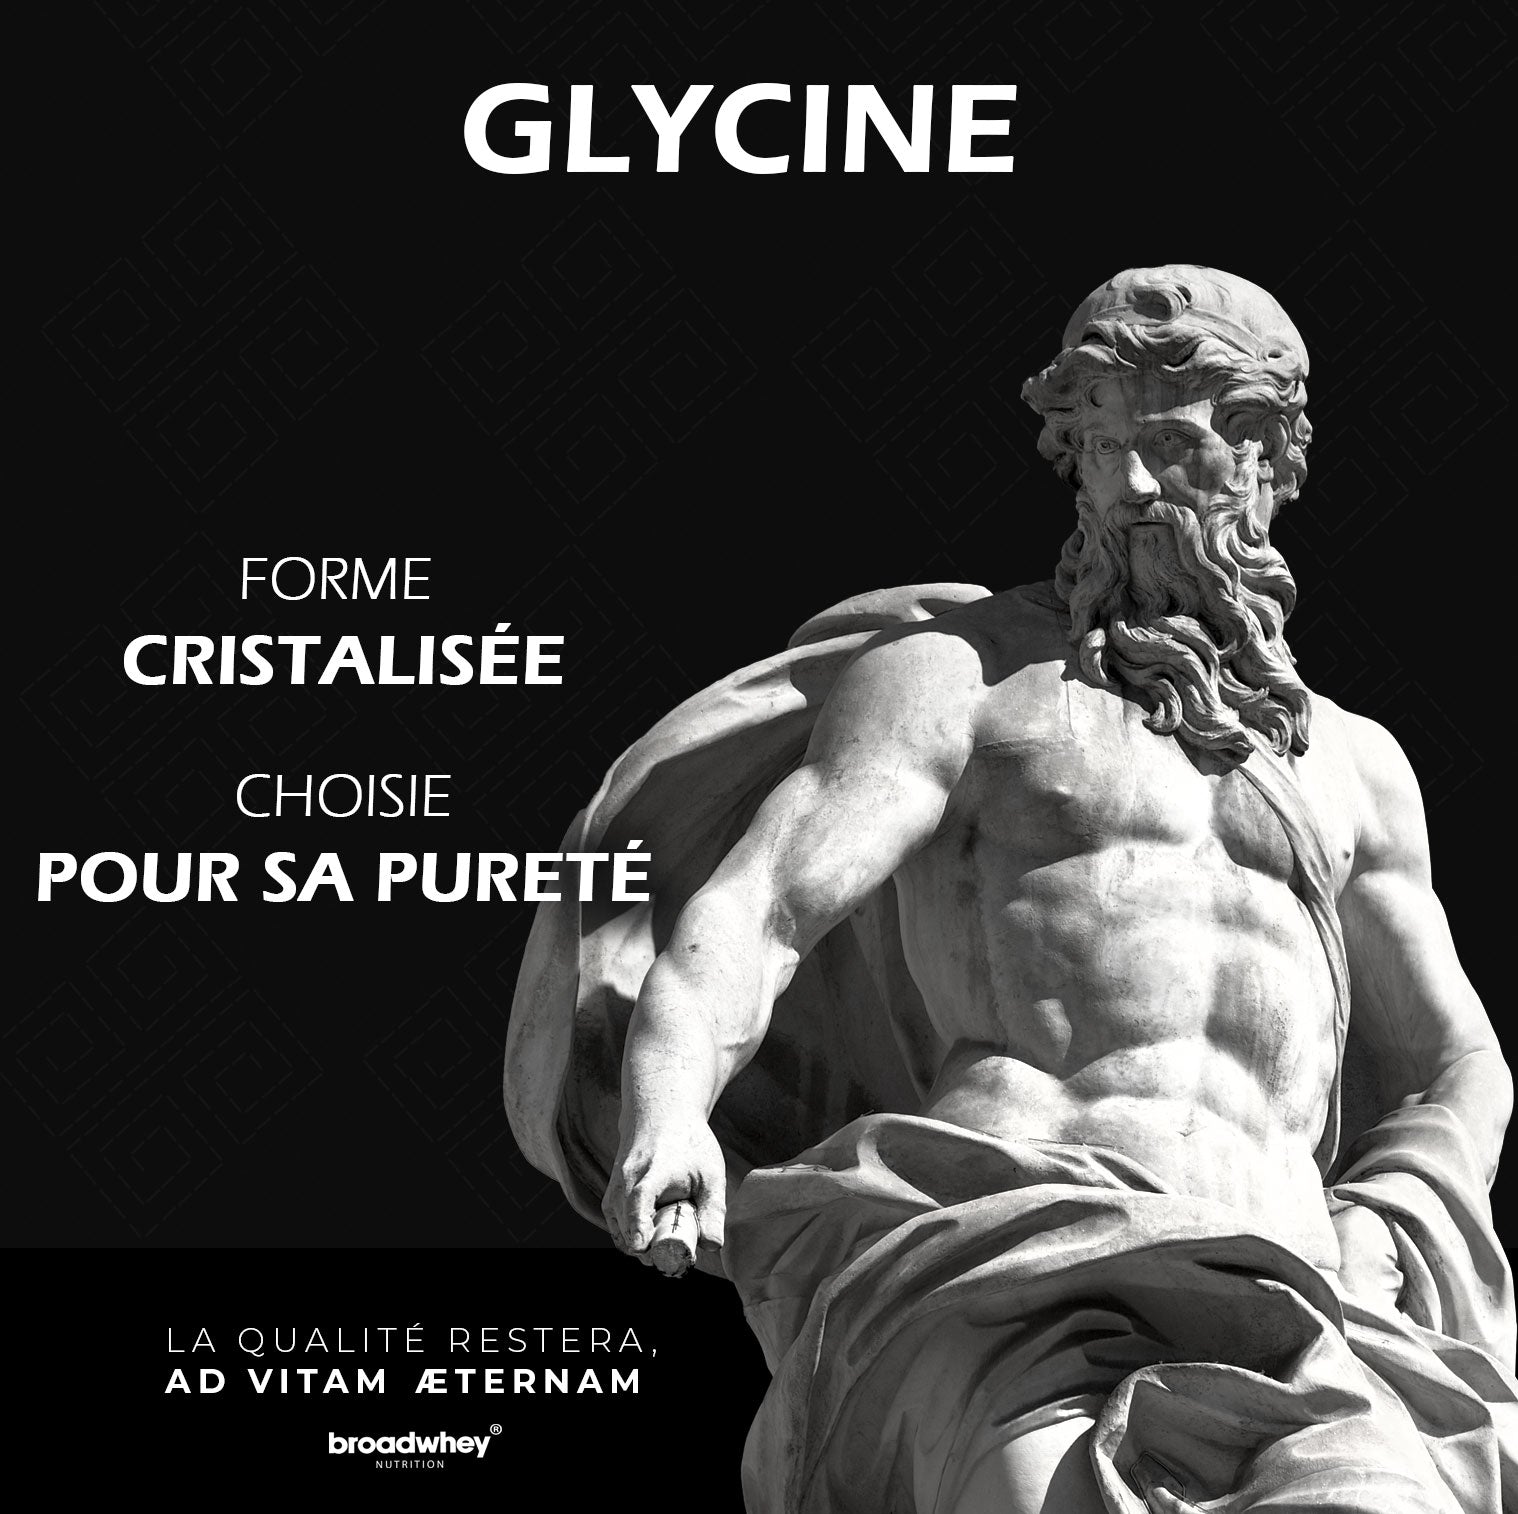 Glycine cristalisée